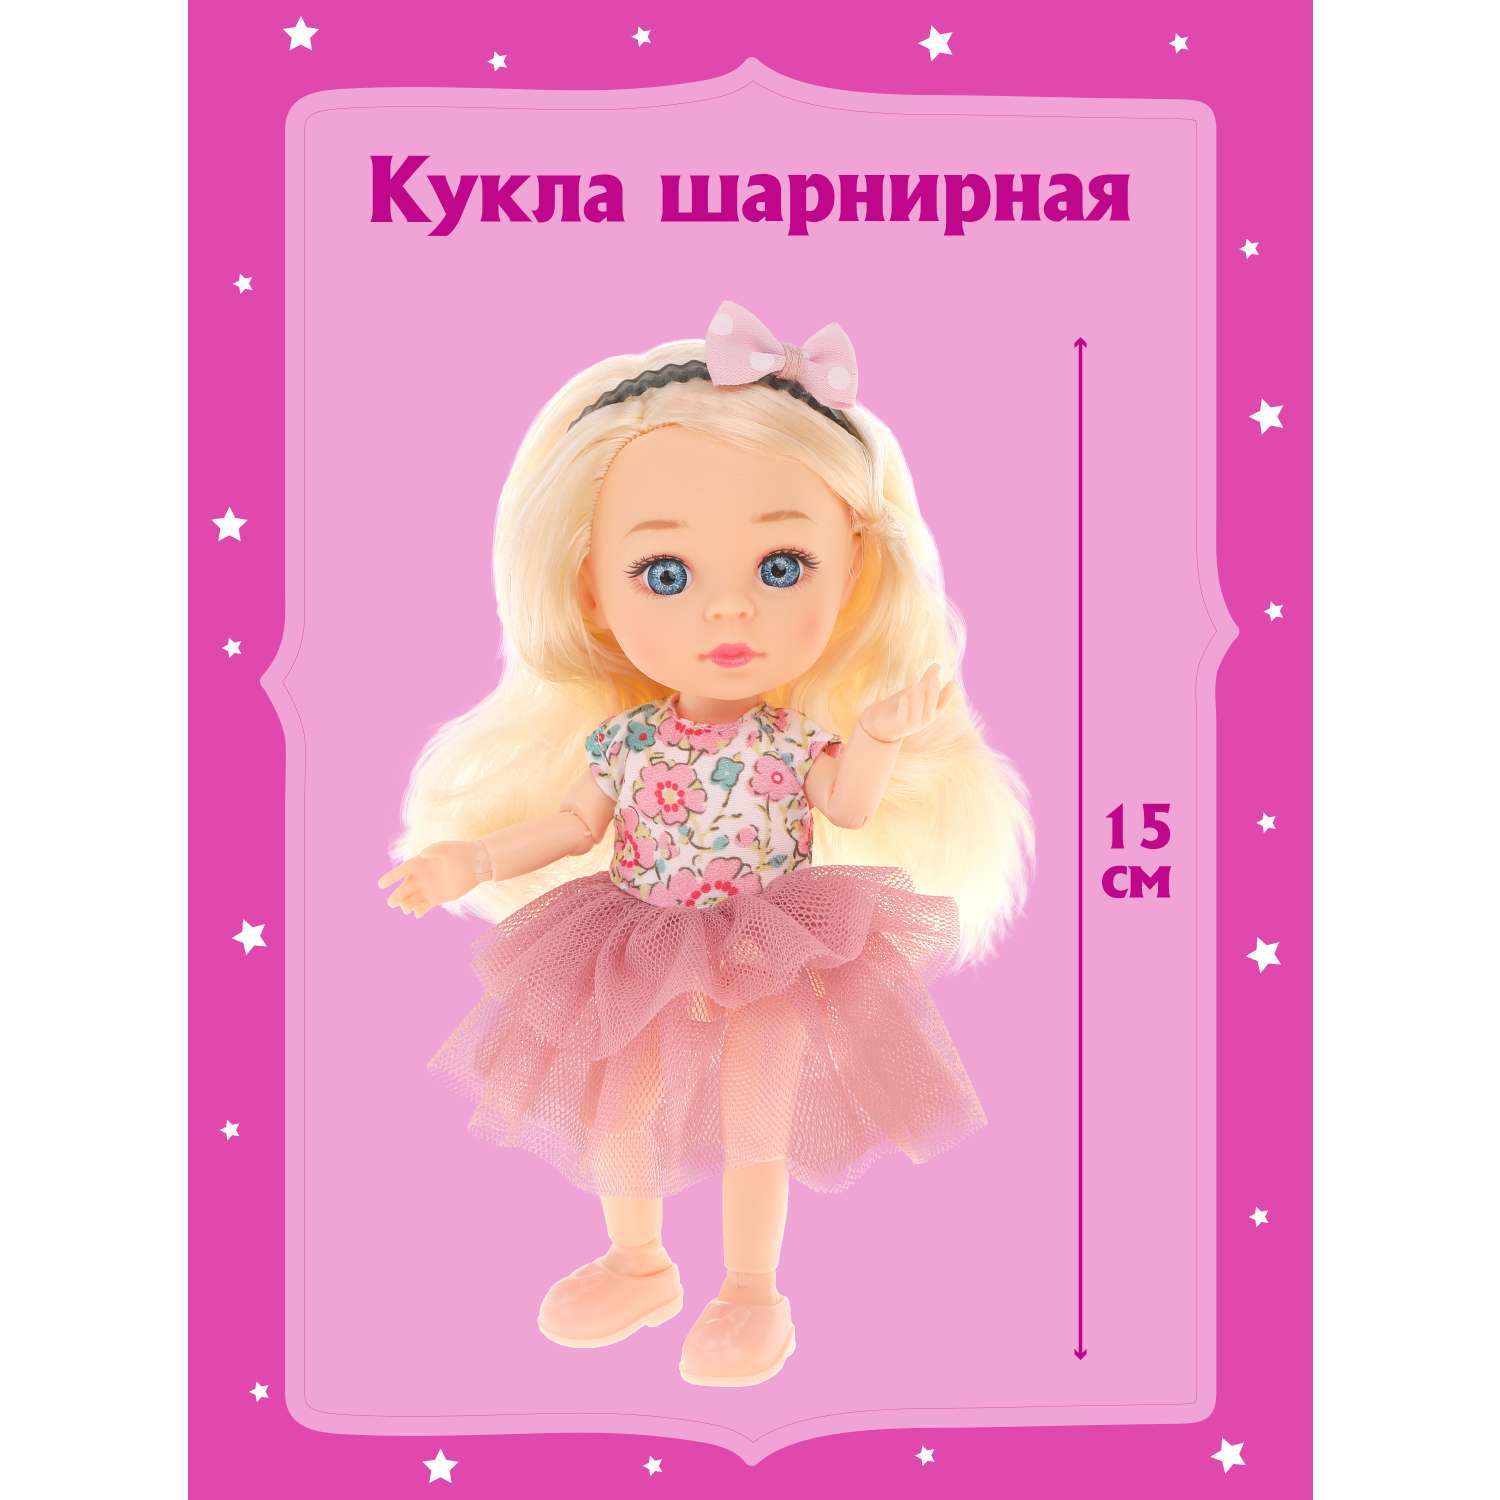 Кукла для девочек Наша Игрушка шарнирная 15 см 803604 - фото 1